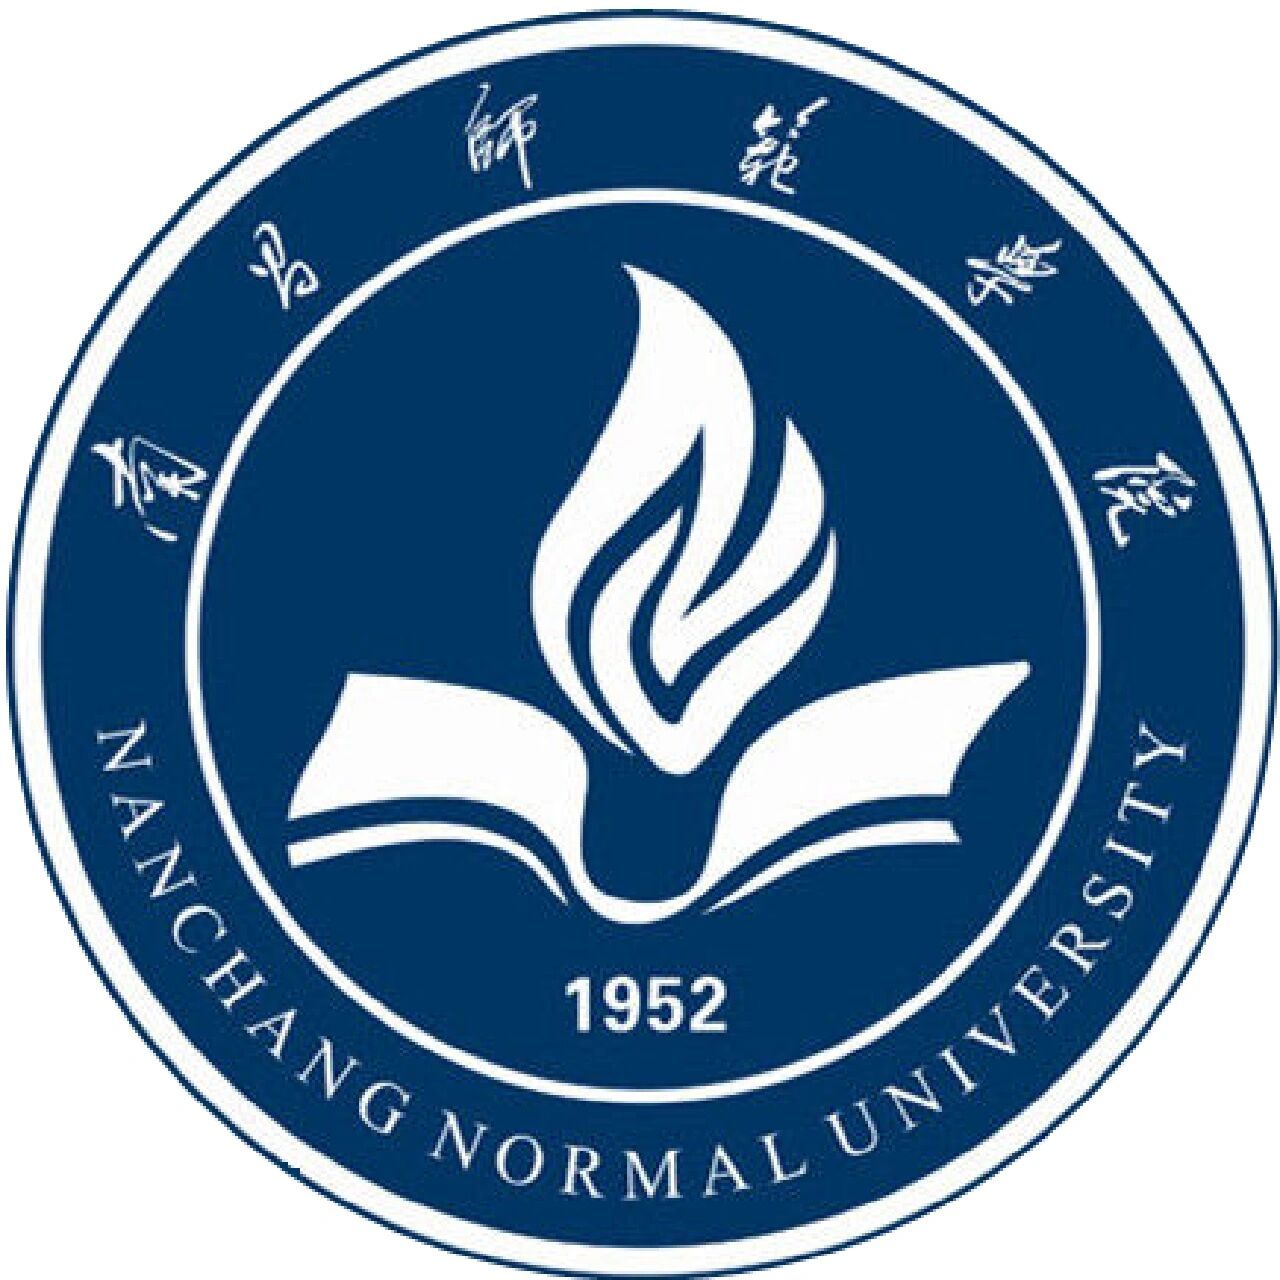 南昌师范学院(nanchang normal university)位于江西南昌,是经江西省